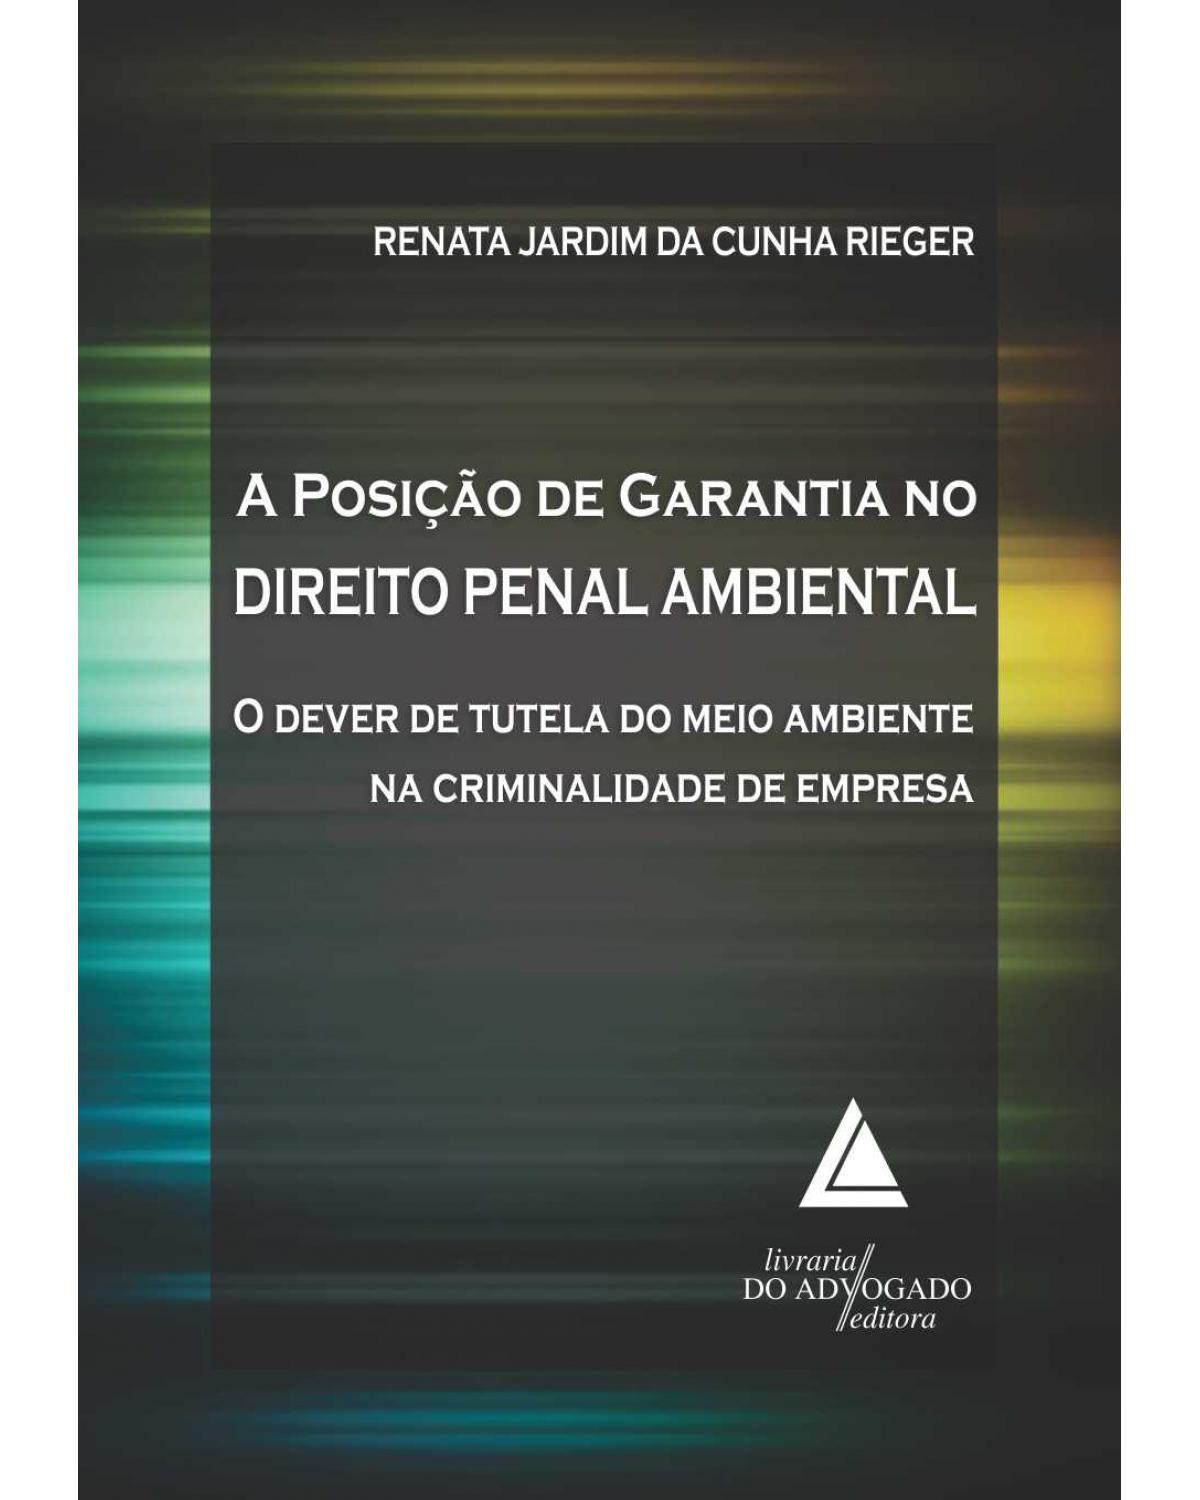 A posição de garantia no direito penal ambiental: O dever de tutela do meio ambiente na criminalidade de empresa - 1ª Edição